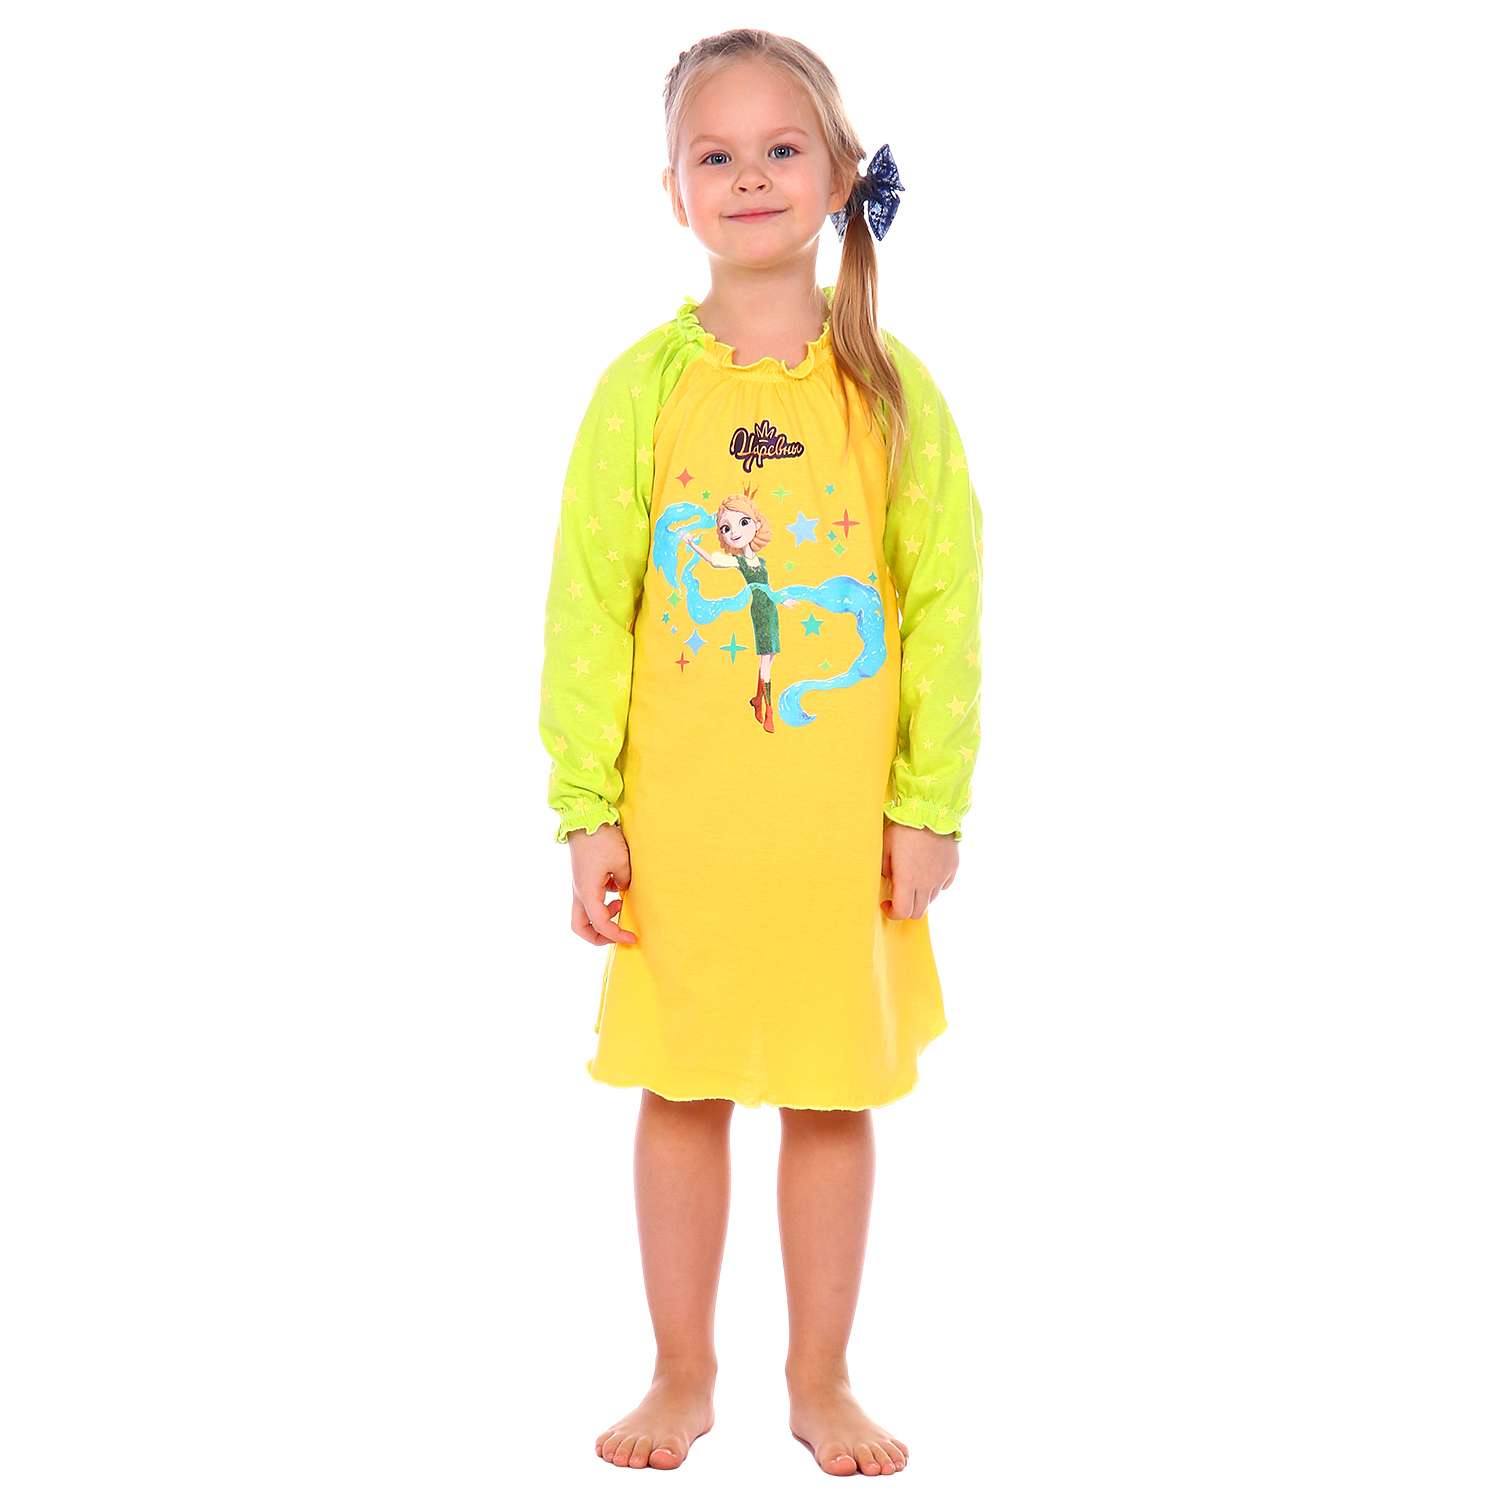 Сорочка ночная Детская Одежда S0505/желтый_салат - фото 1